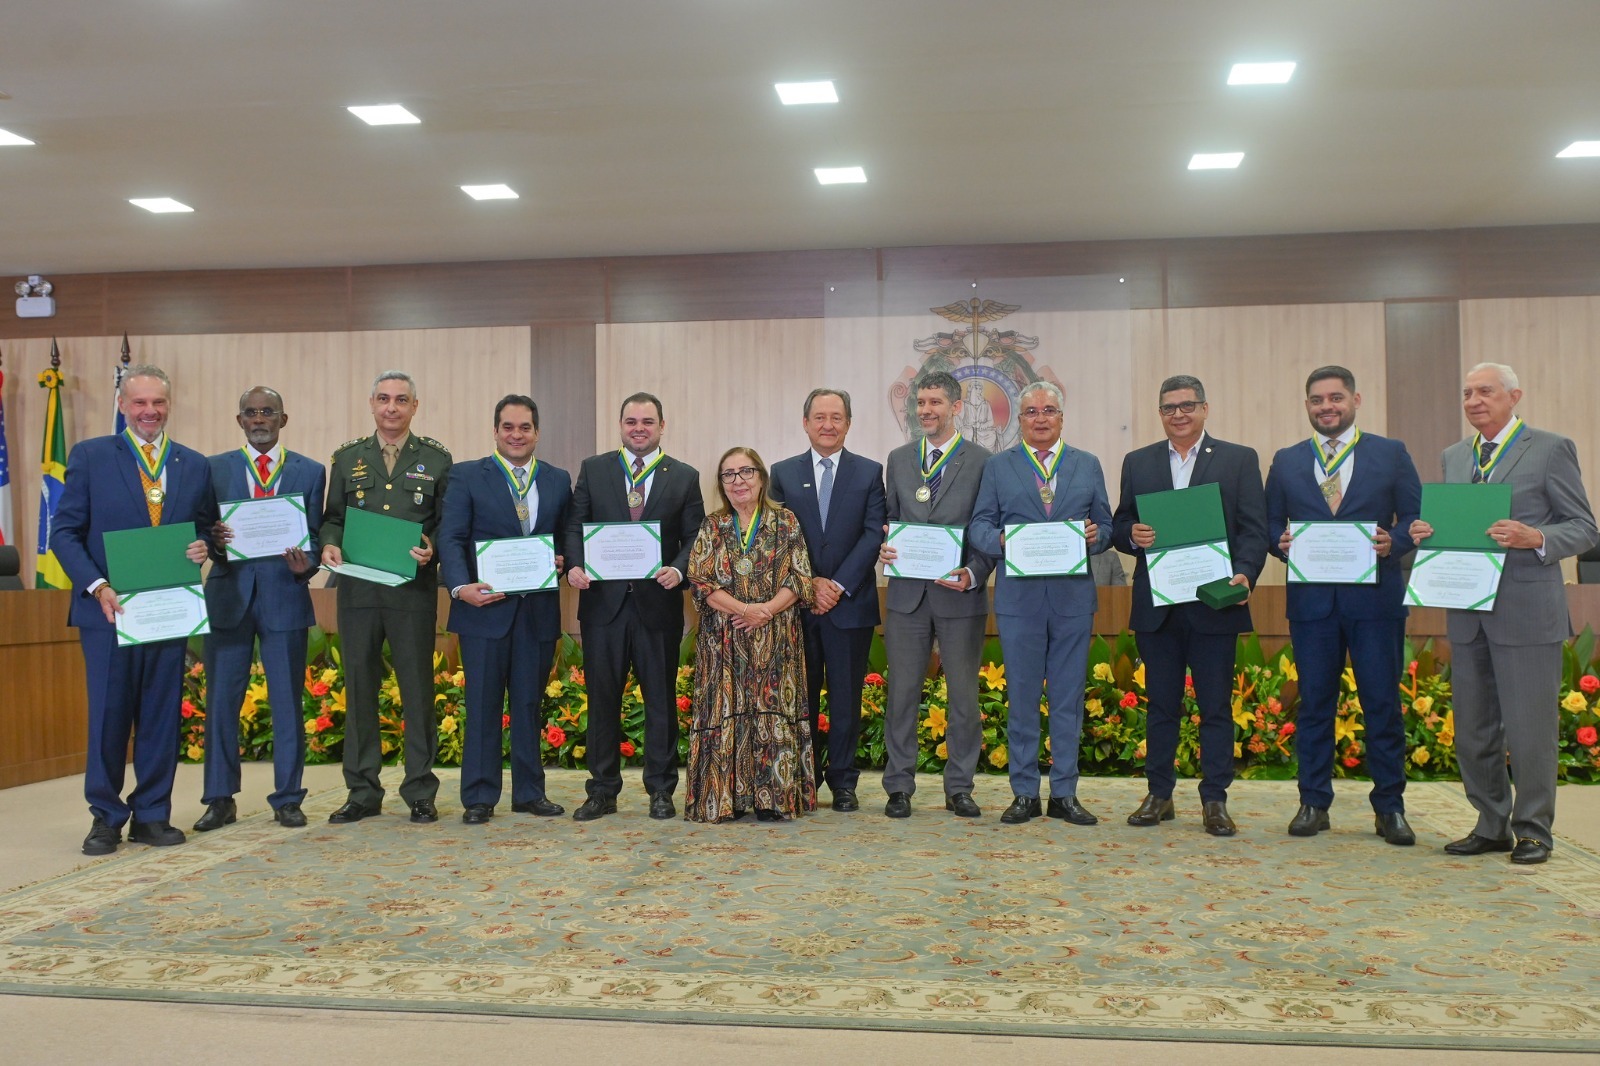 foto colorida mostra doze desembargadores posando para fotografia, após receberem honraria, Medalha de Mérito Acadêmico da Escola Judicial do Justiça do Amazonas (Ejud/TJAM). 